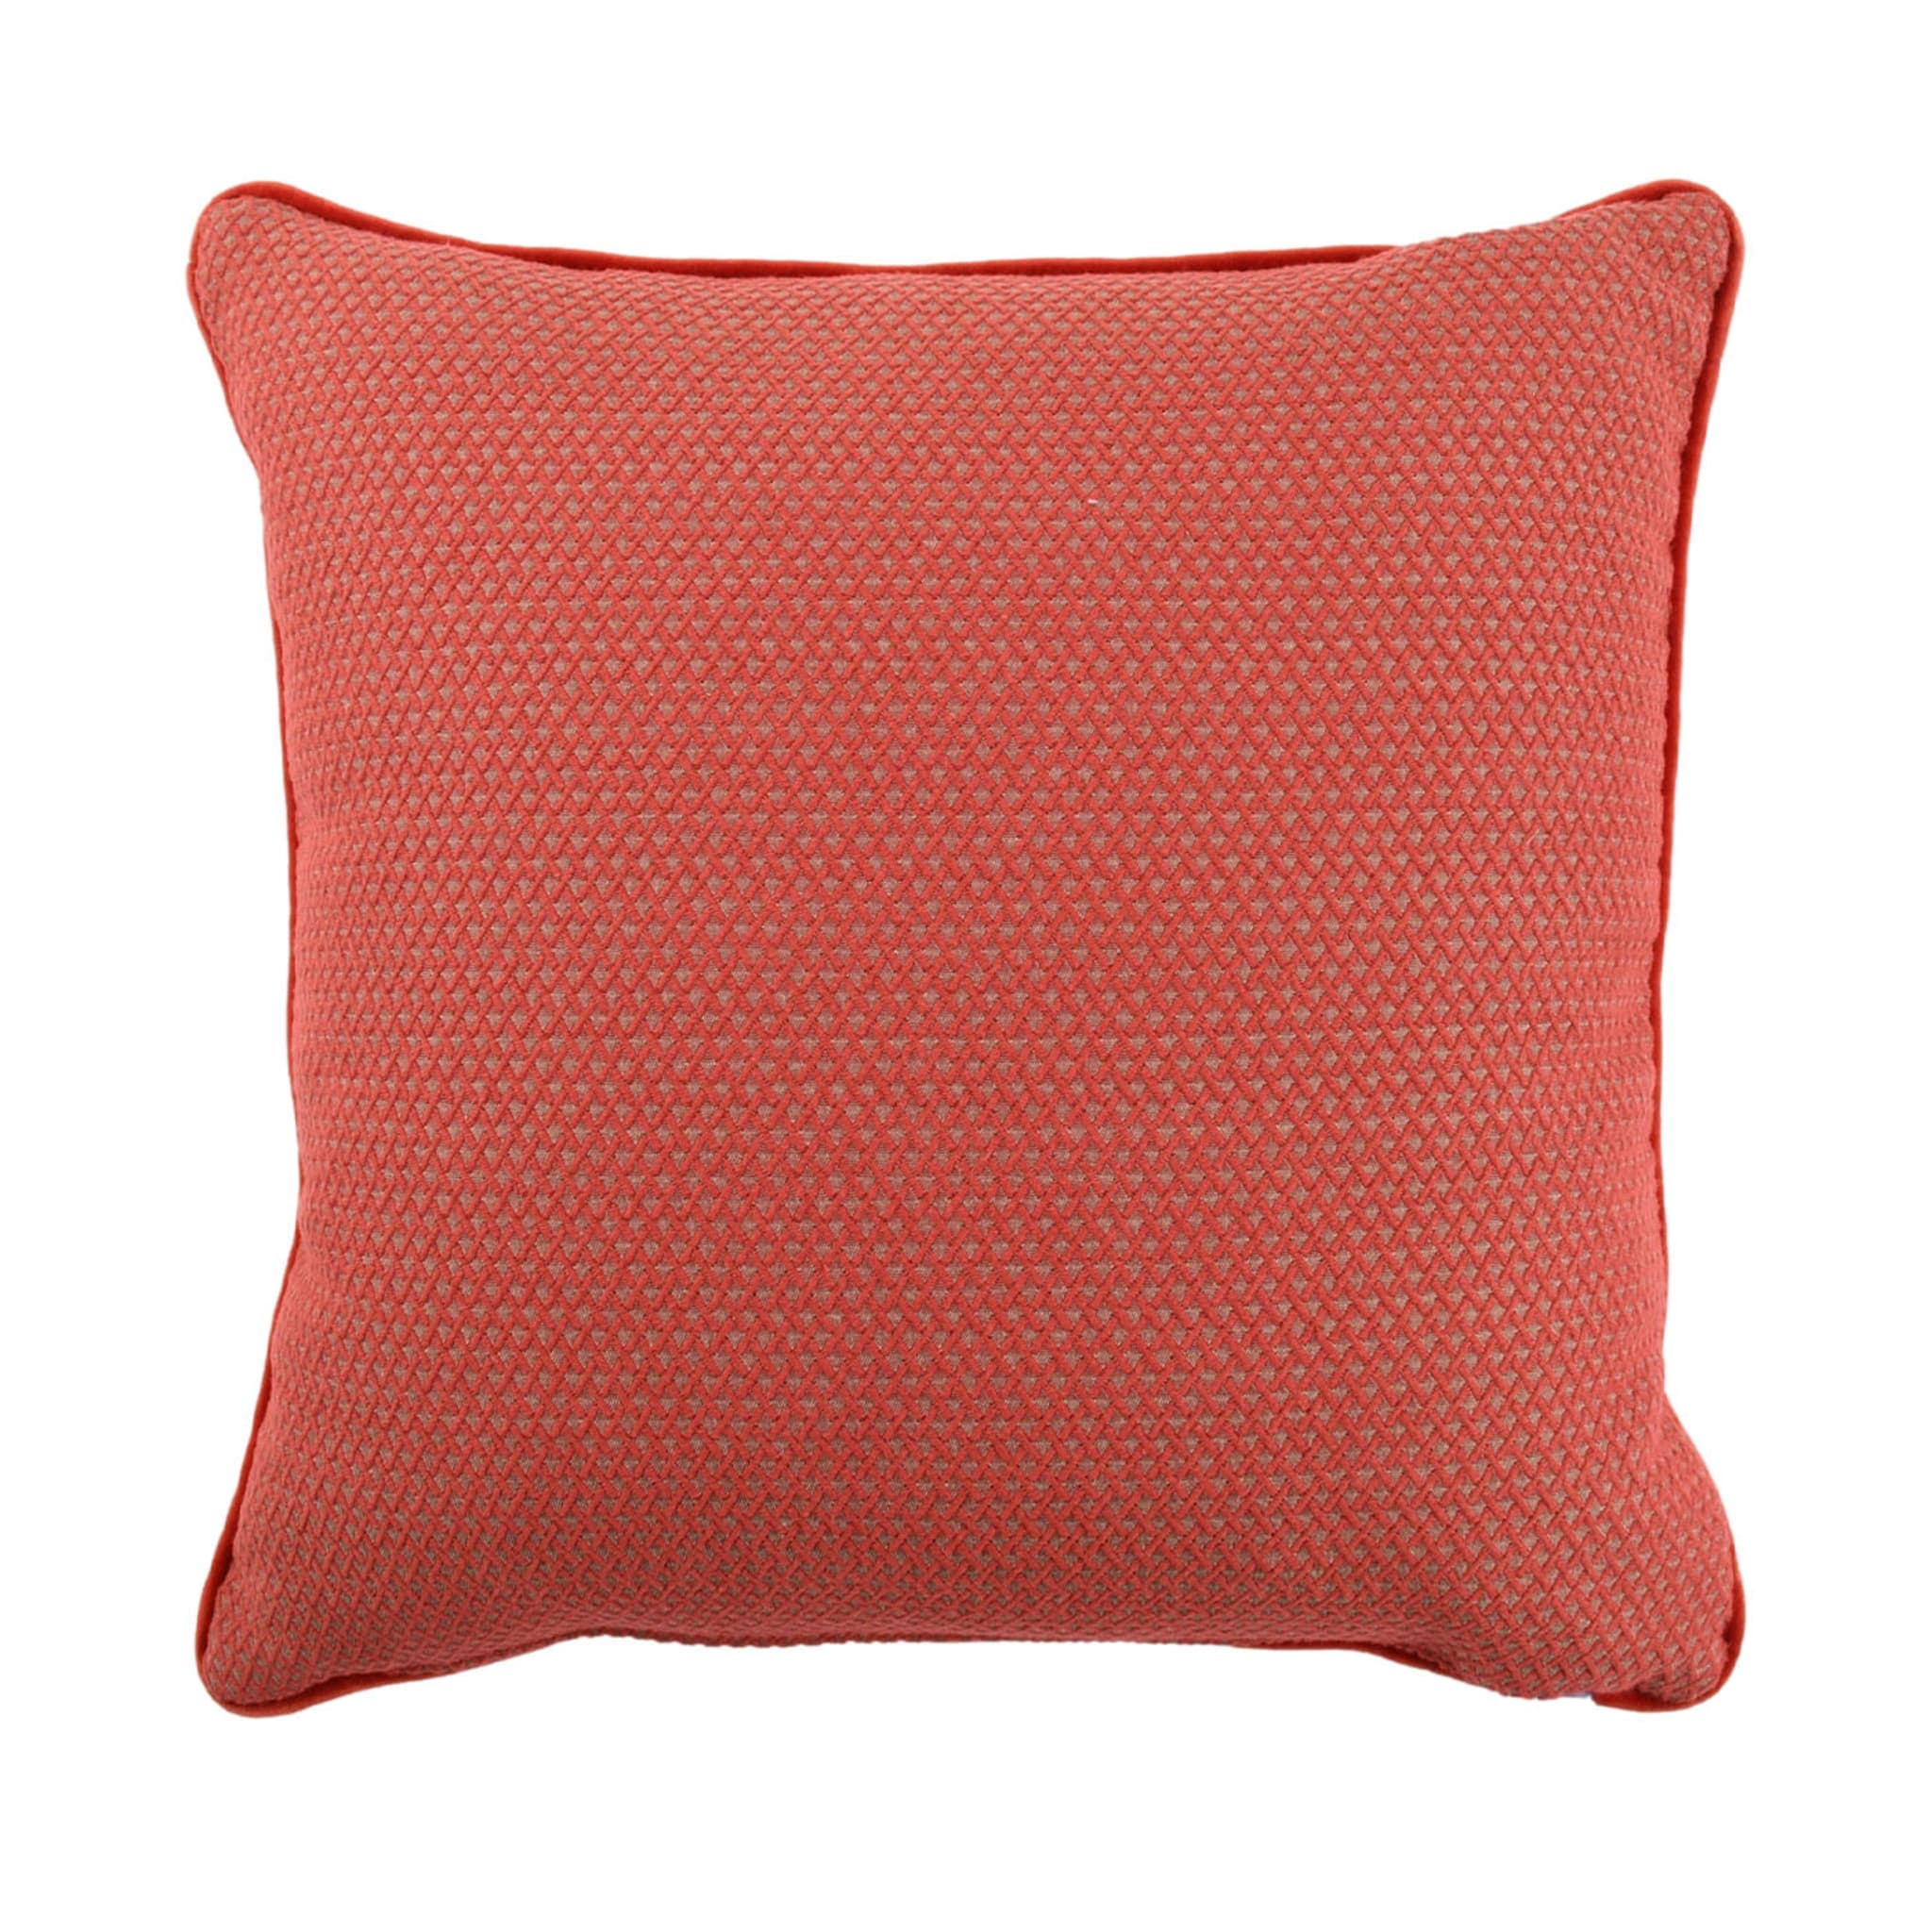 Carrè Cushion In Geometric Relief Jacquard Fabric #1 - Alternative view 1